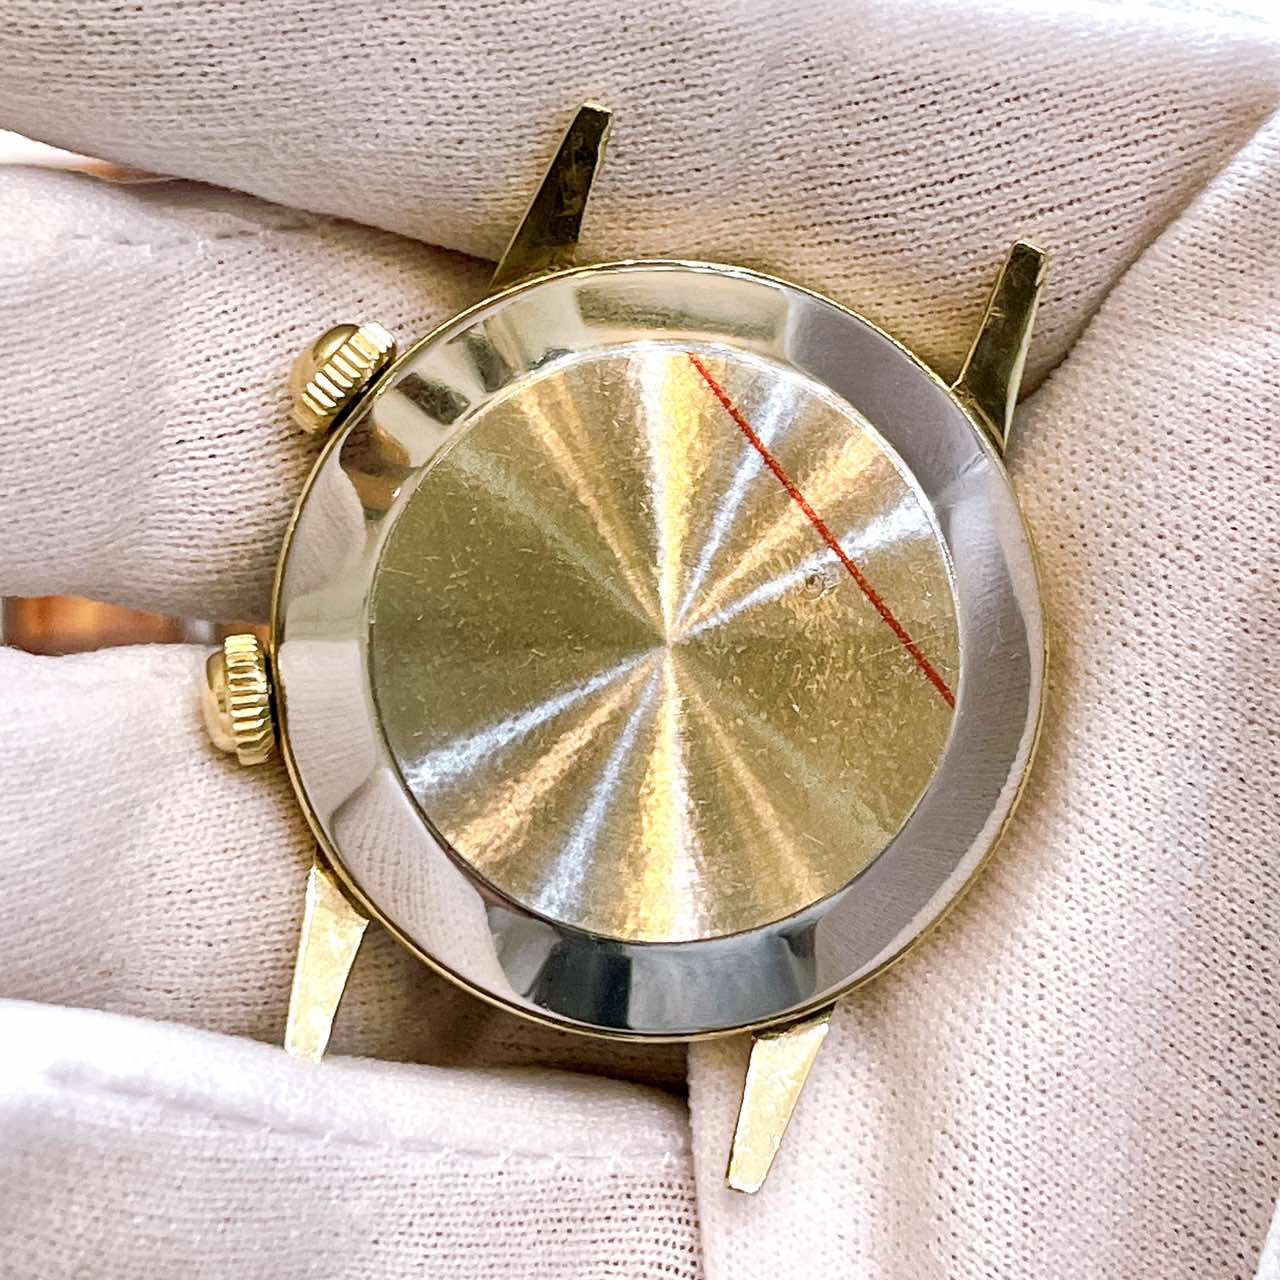 Đồng hồ cổ CITIZEN rung reo bát quái kim đĩa lên dây vỏ bọc vàng 14k gold chính hãng nhật bản 